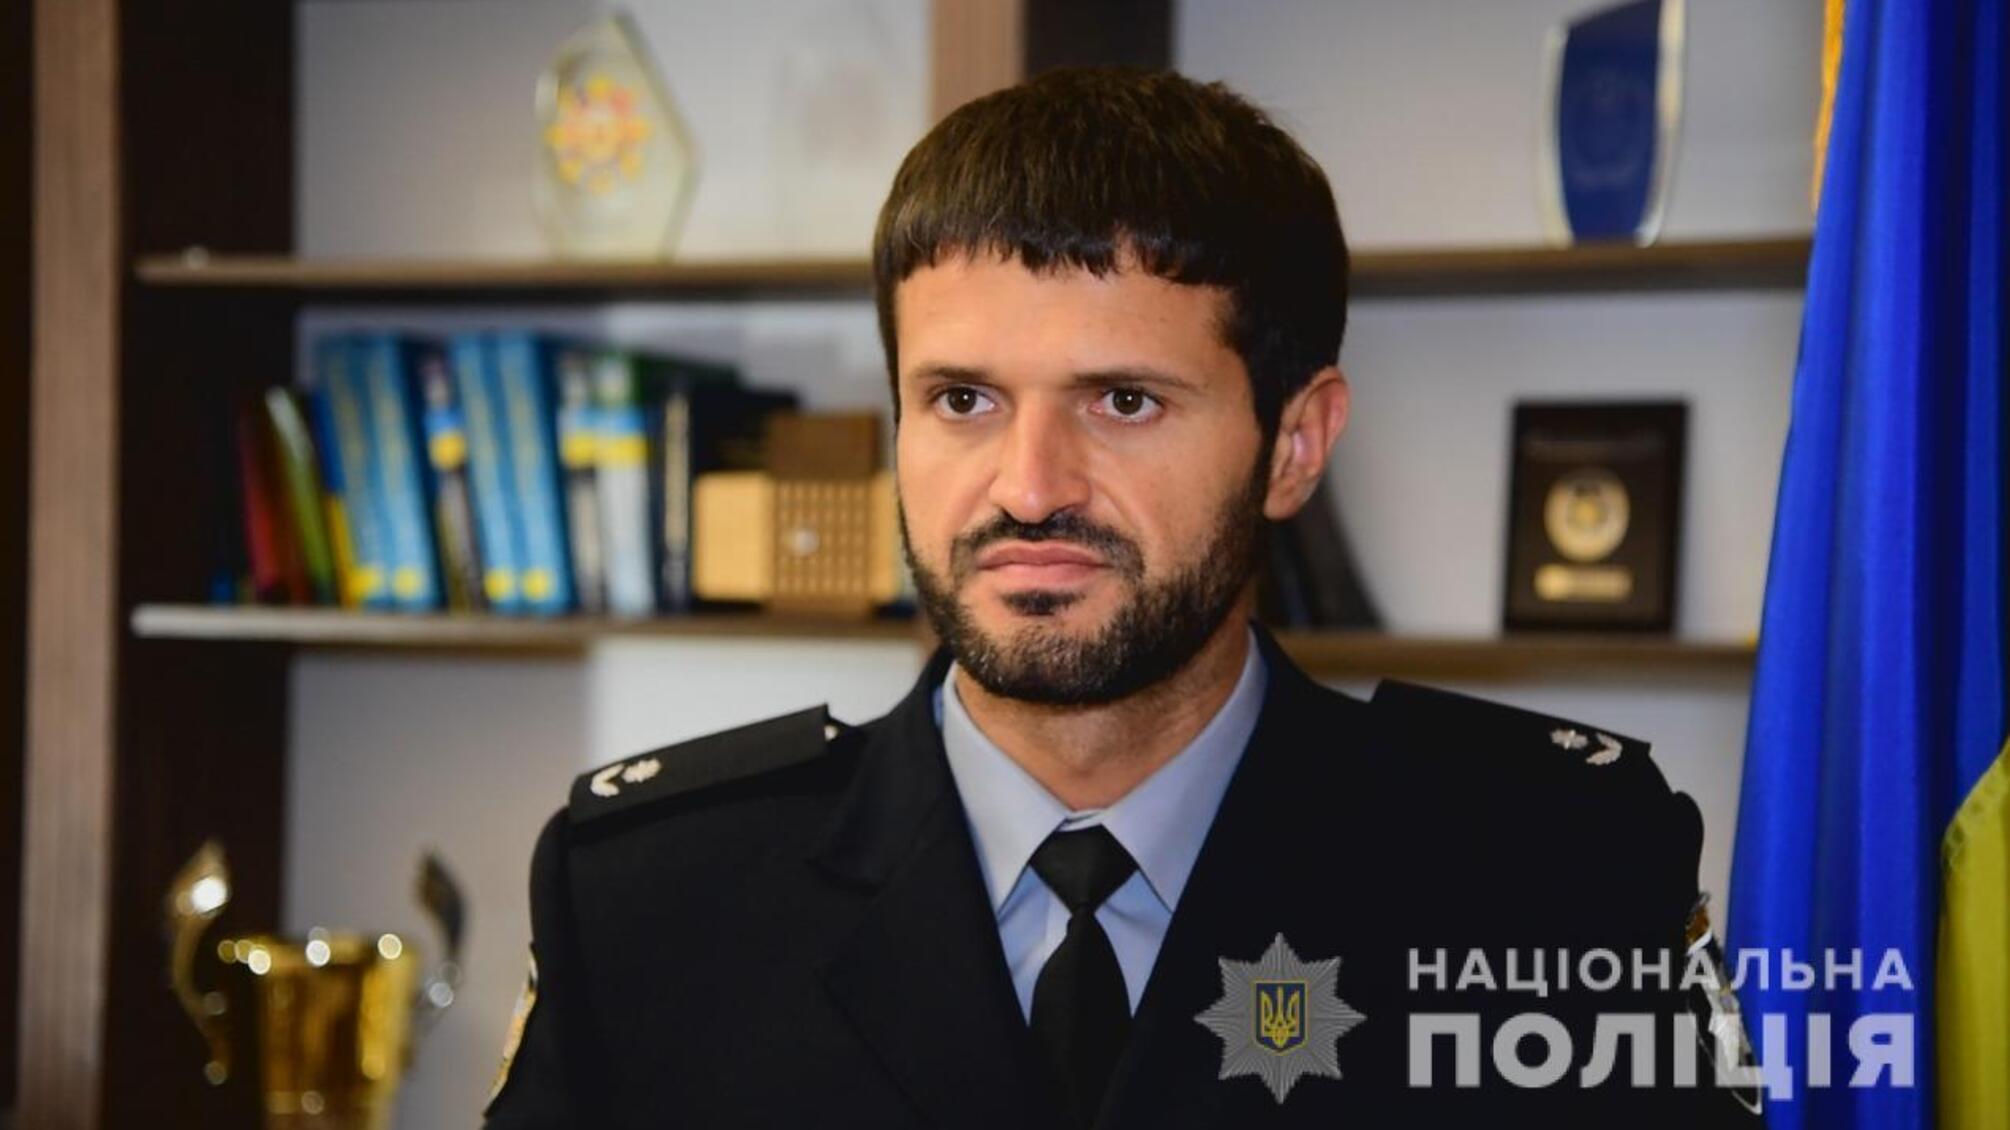 Міграційна поліція Одещини закликає громадян повідомляти про випадки торгівлі людьми до поліції та спецслужб